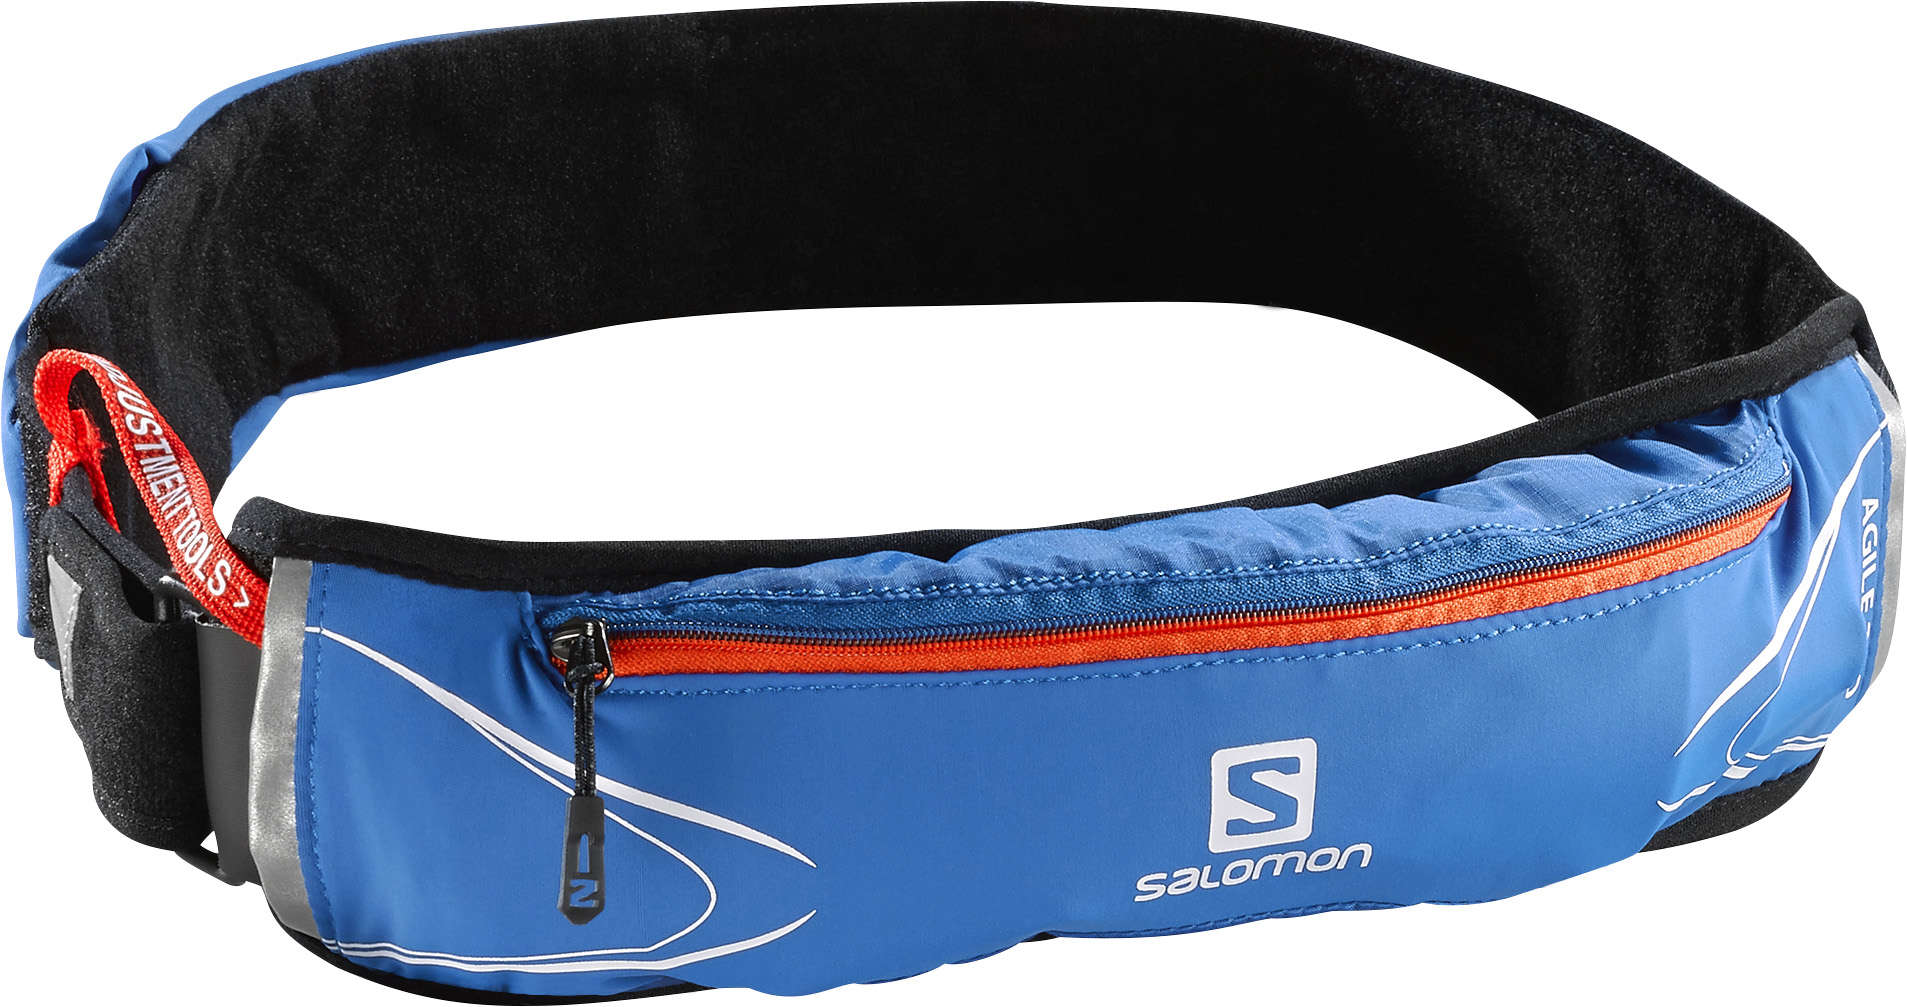 Salomon Agile 250 Belt Blauw/Zwart